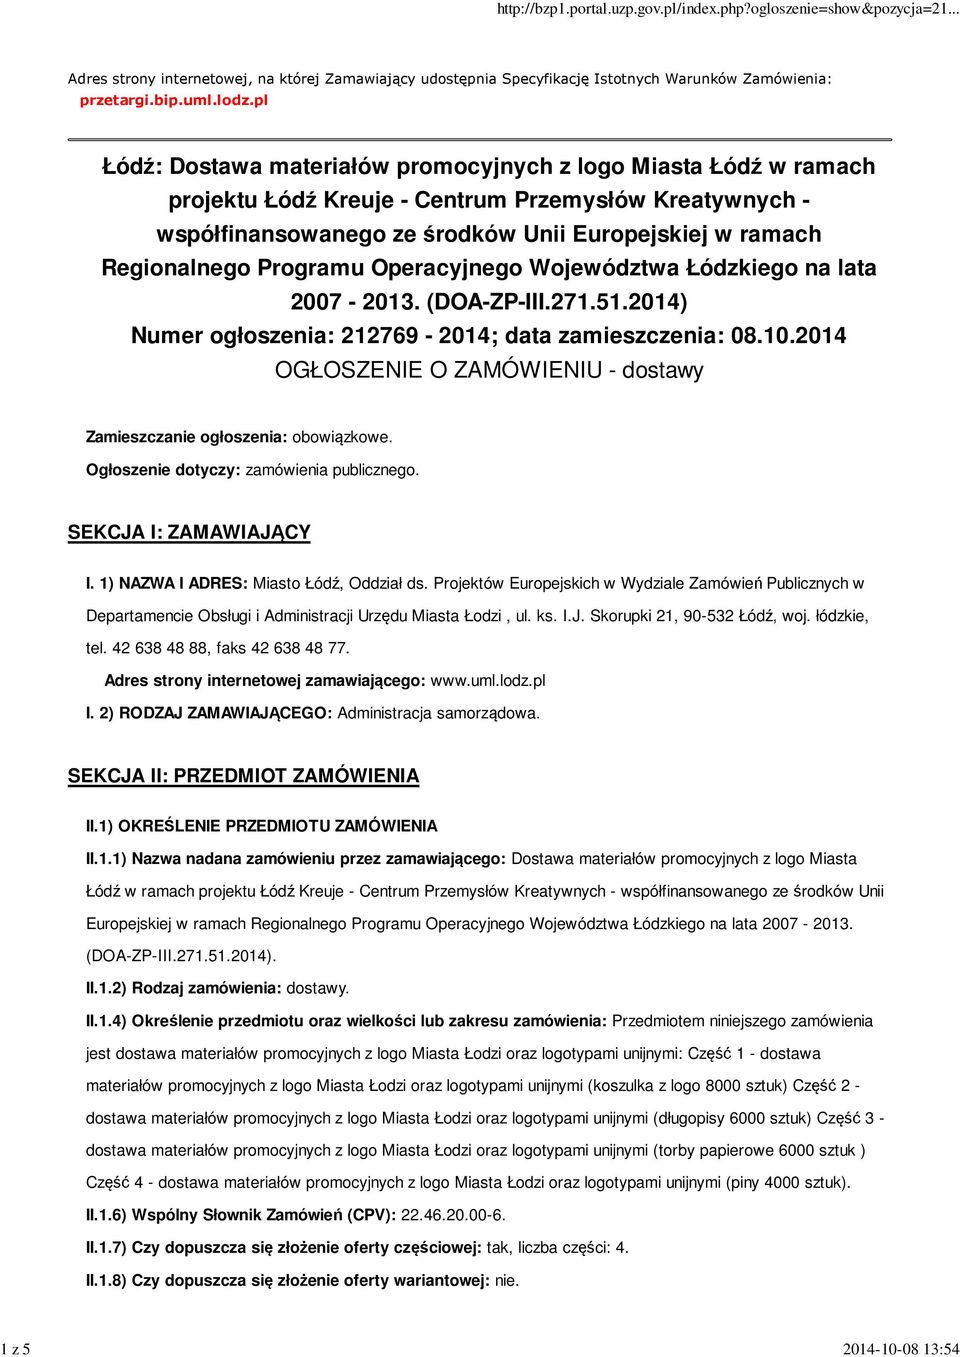 Programu Operacyjnego Województwa Łódzkiego na lata 2007-2013. (DOA-ZP-III.271.51.2014) Numer ogłoszenia: 212769-2014; data zamieszczenia: 08.10.